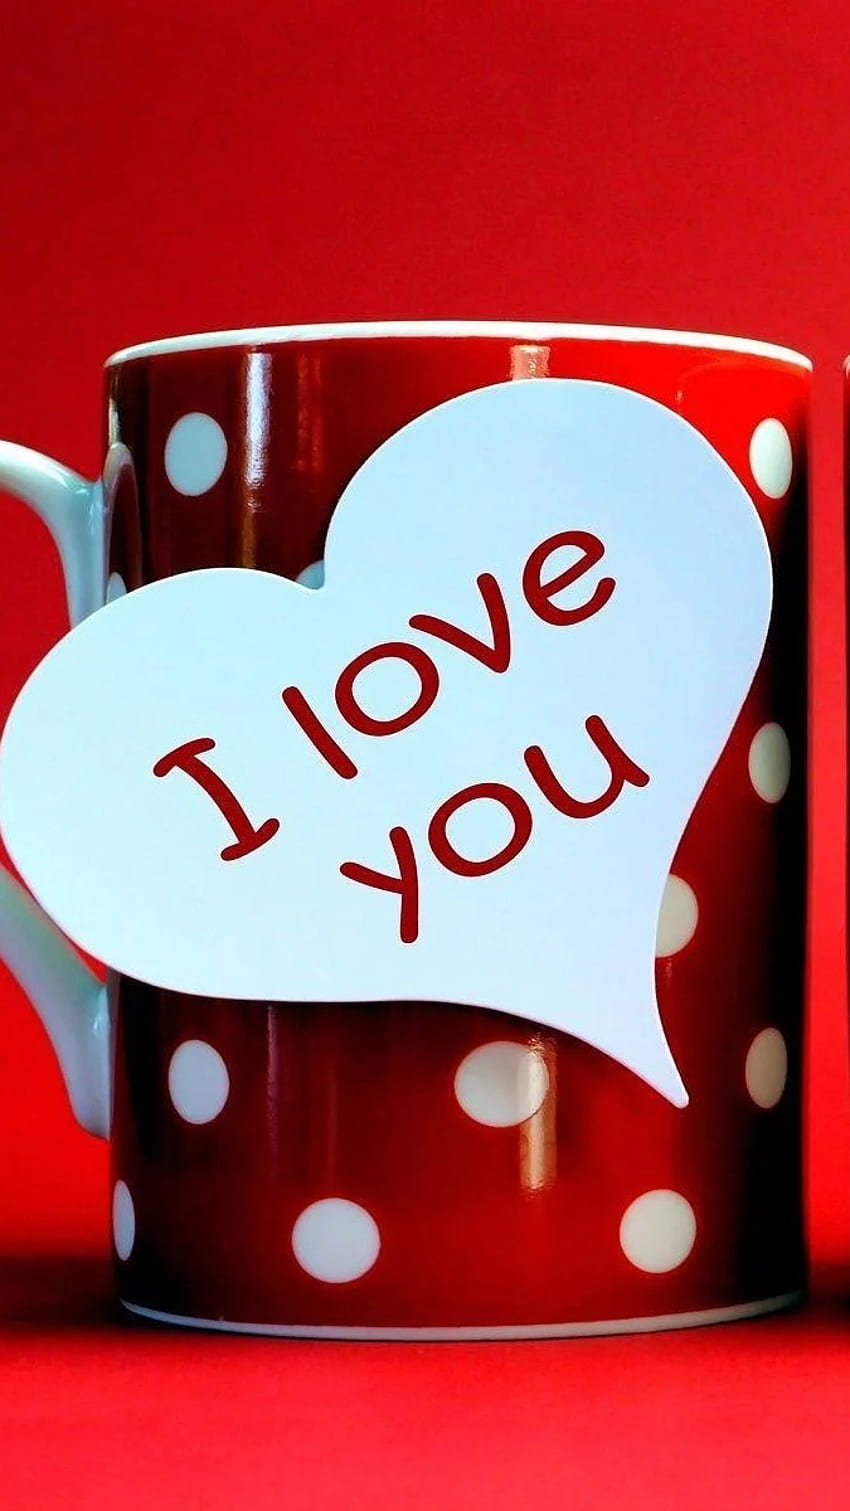 Love in a mug HD wallpapers | Pxfuel